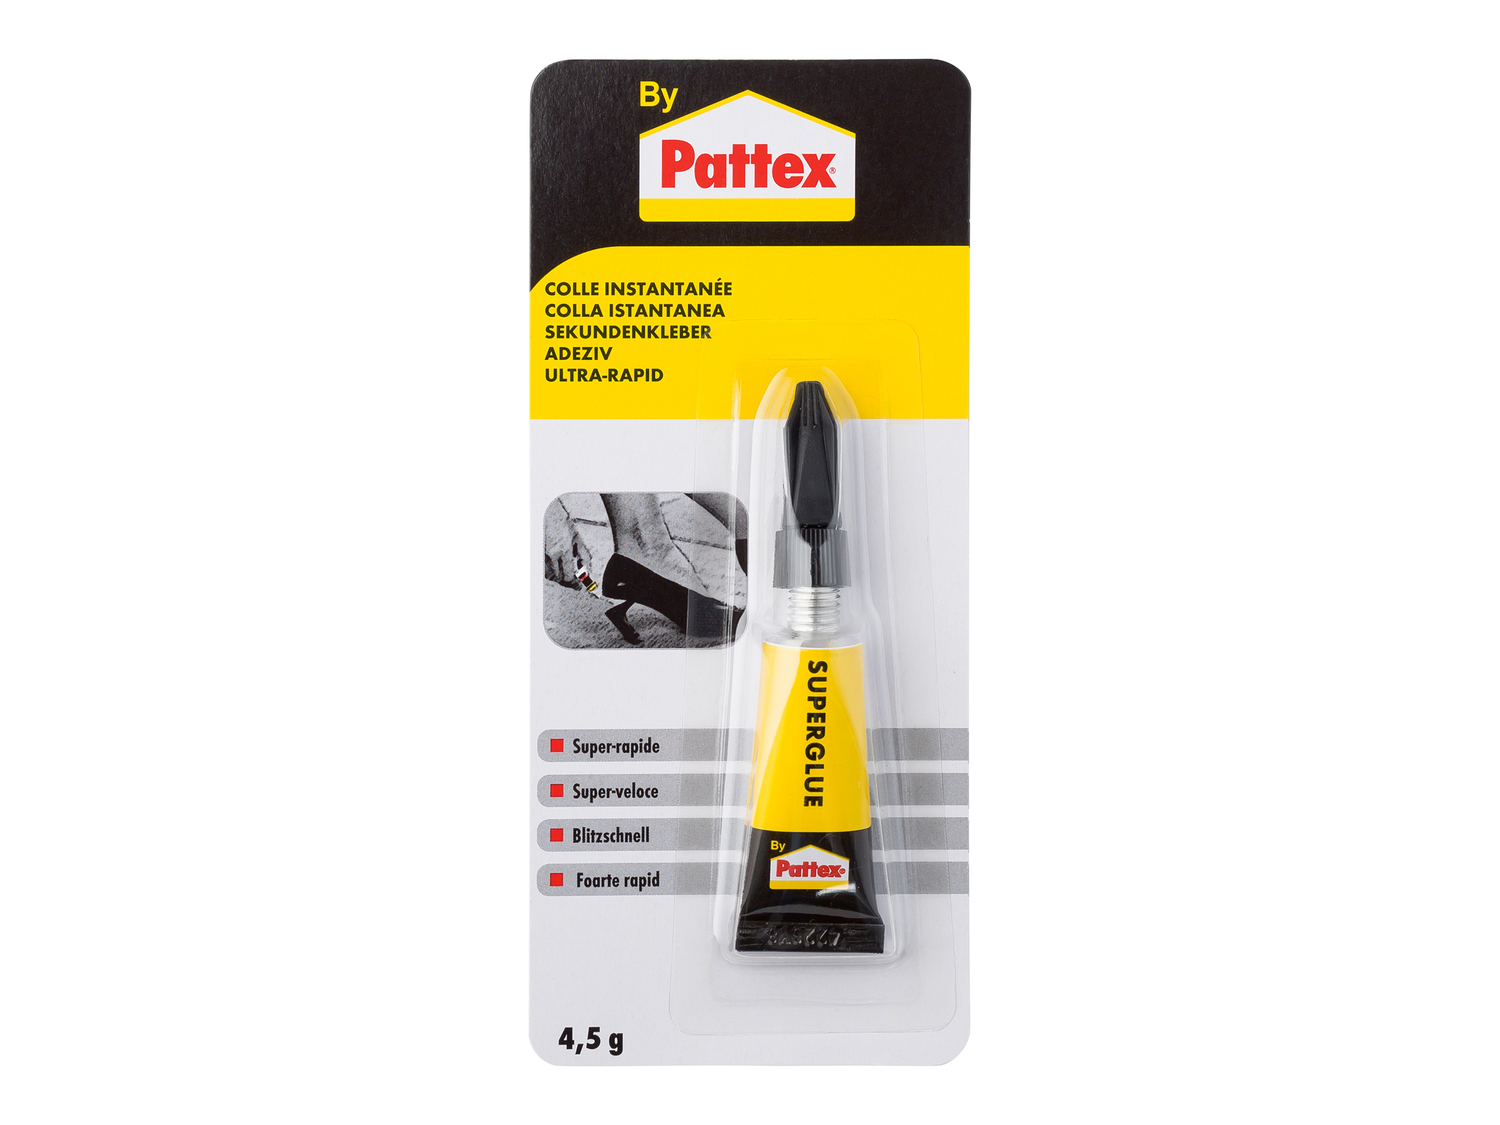 Colla o nastro adesivo Pattex, prezzo 1.49 €  

Caratteristiche

- Pritt